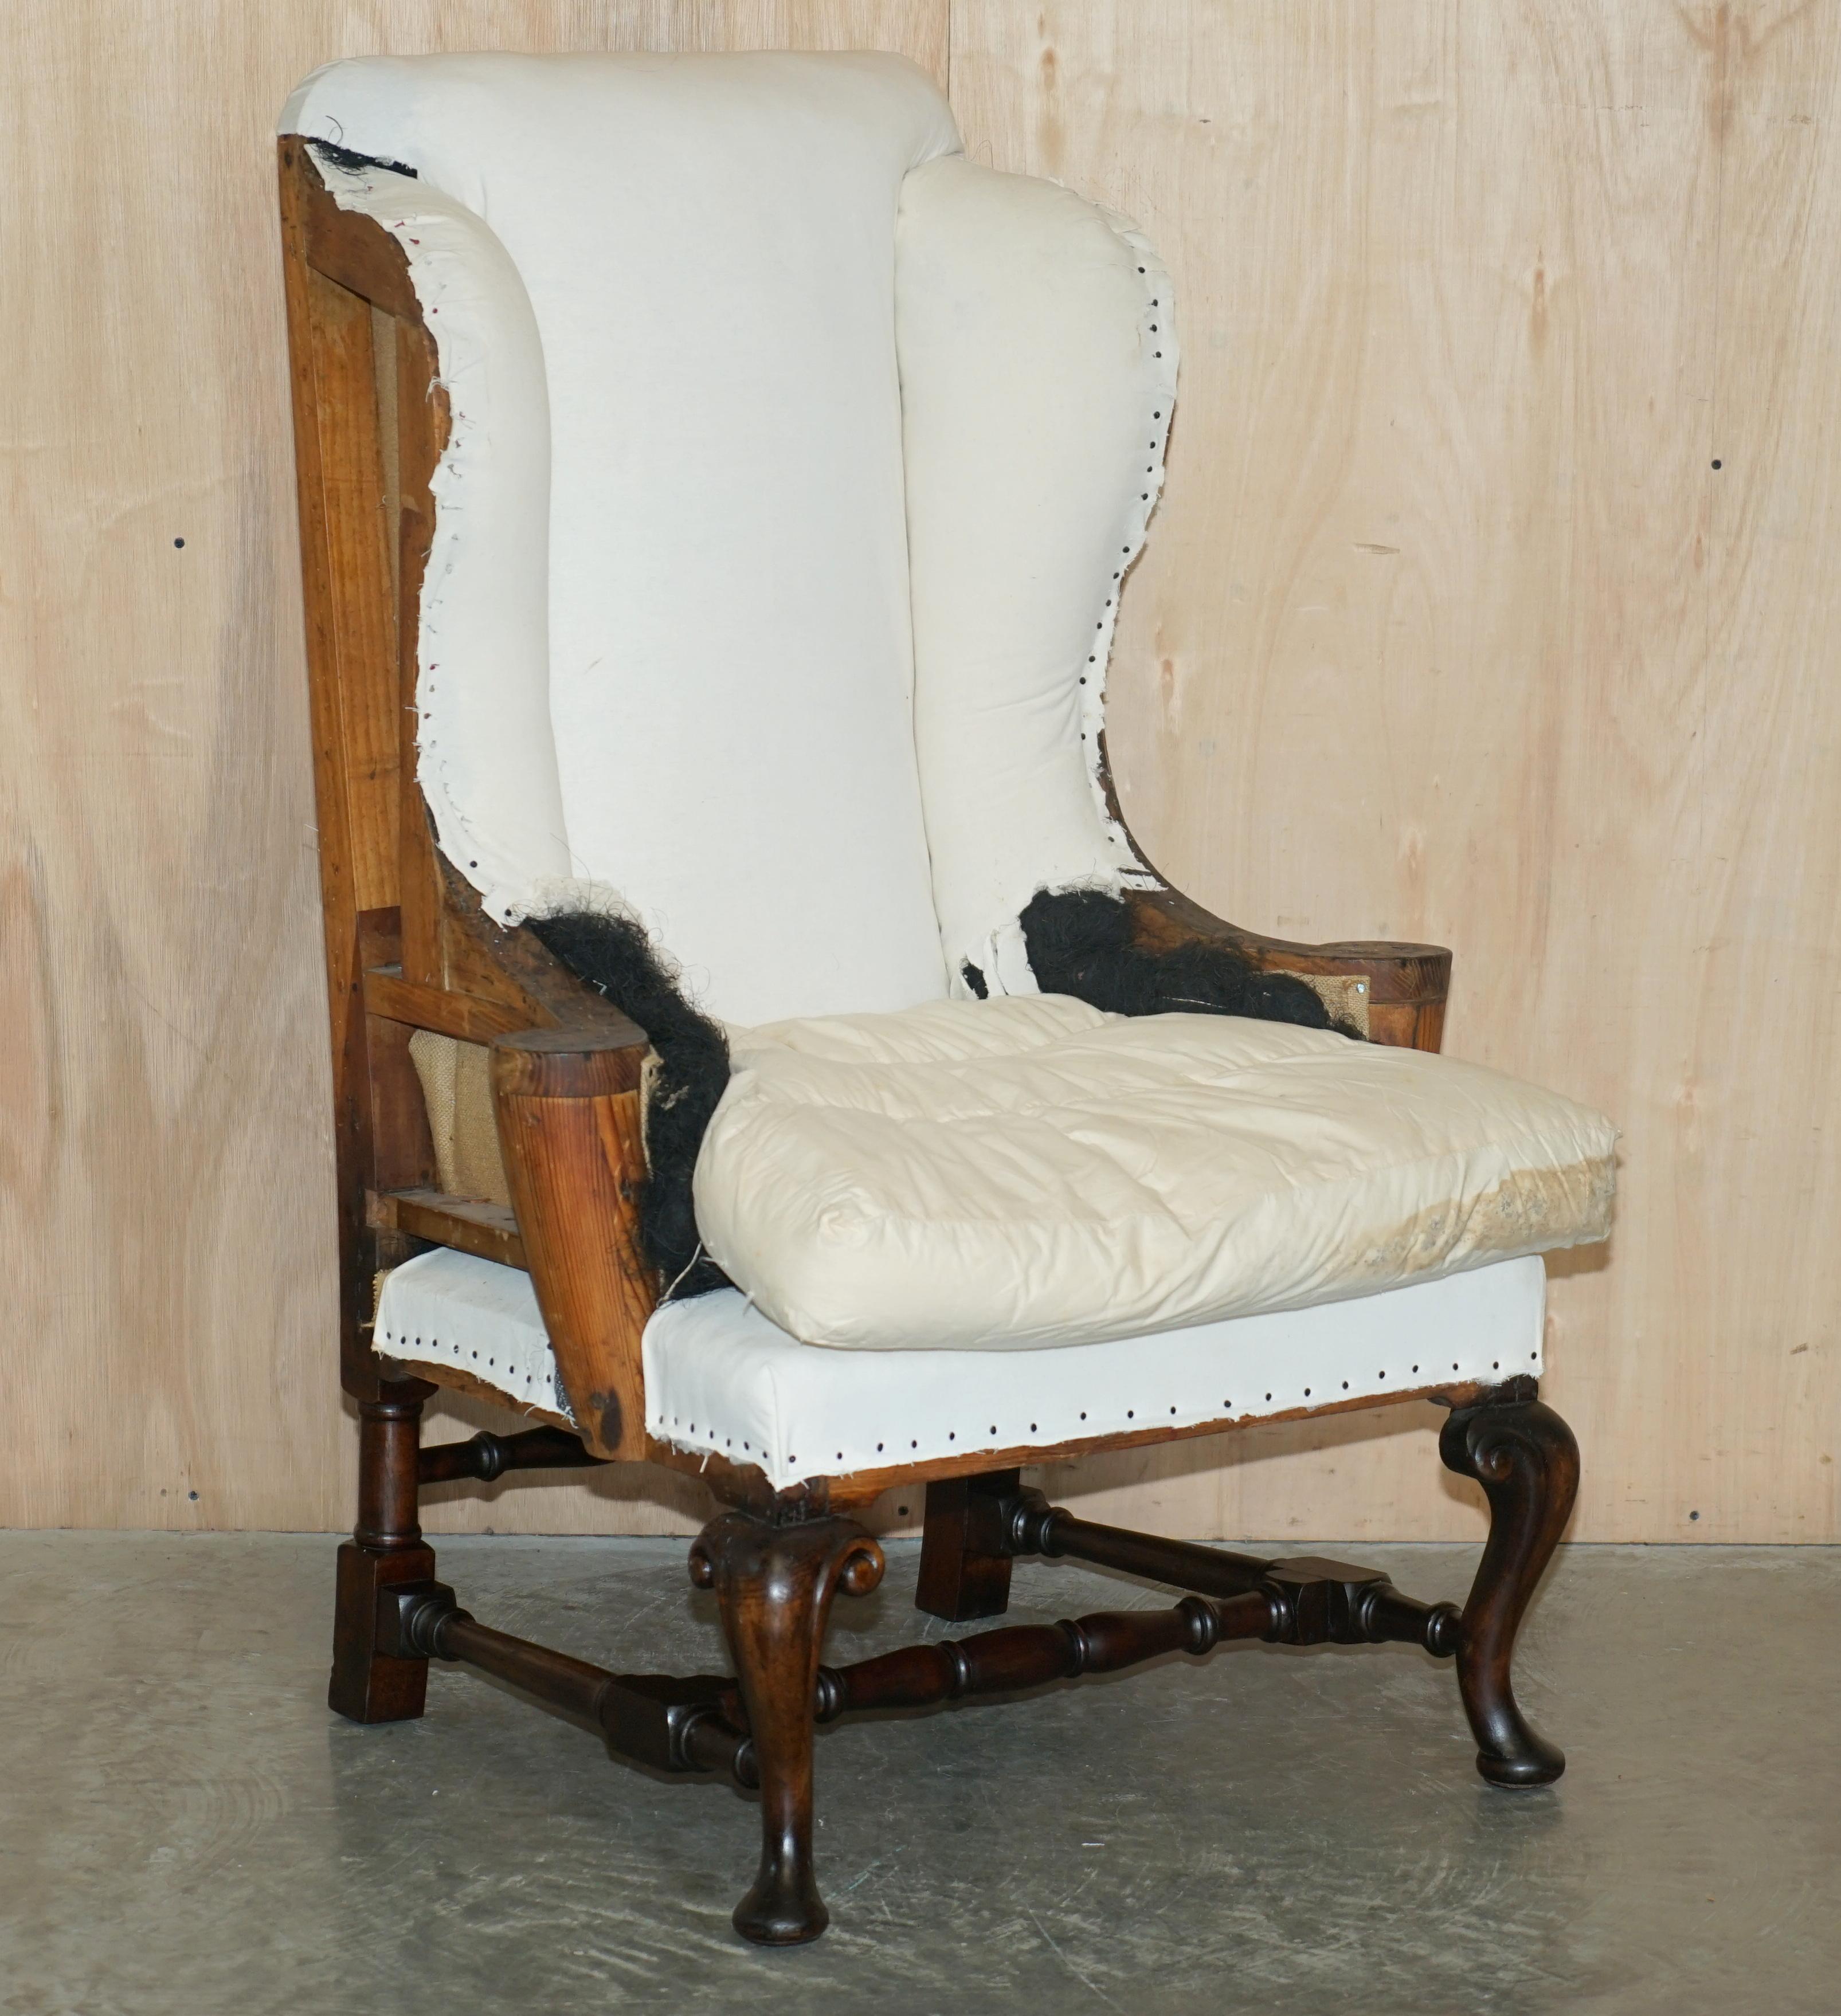 Nous sommes ravis d'offrir à la vente cette exquise paire de fauteuils Wingback déconstruits de l'époque géorgienne vers 1820, avec des pieds cabriole ornementalement sculptés et des accoudoirs plats de style William Morris.

Cette paire a été